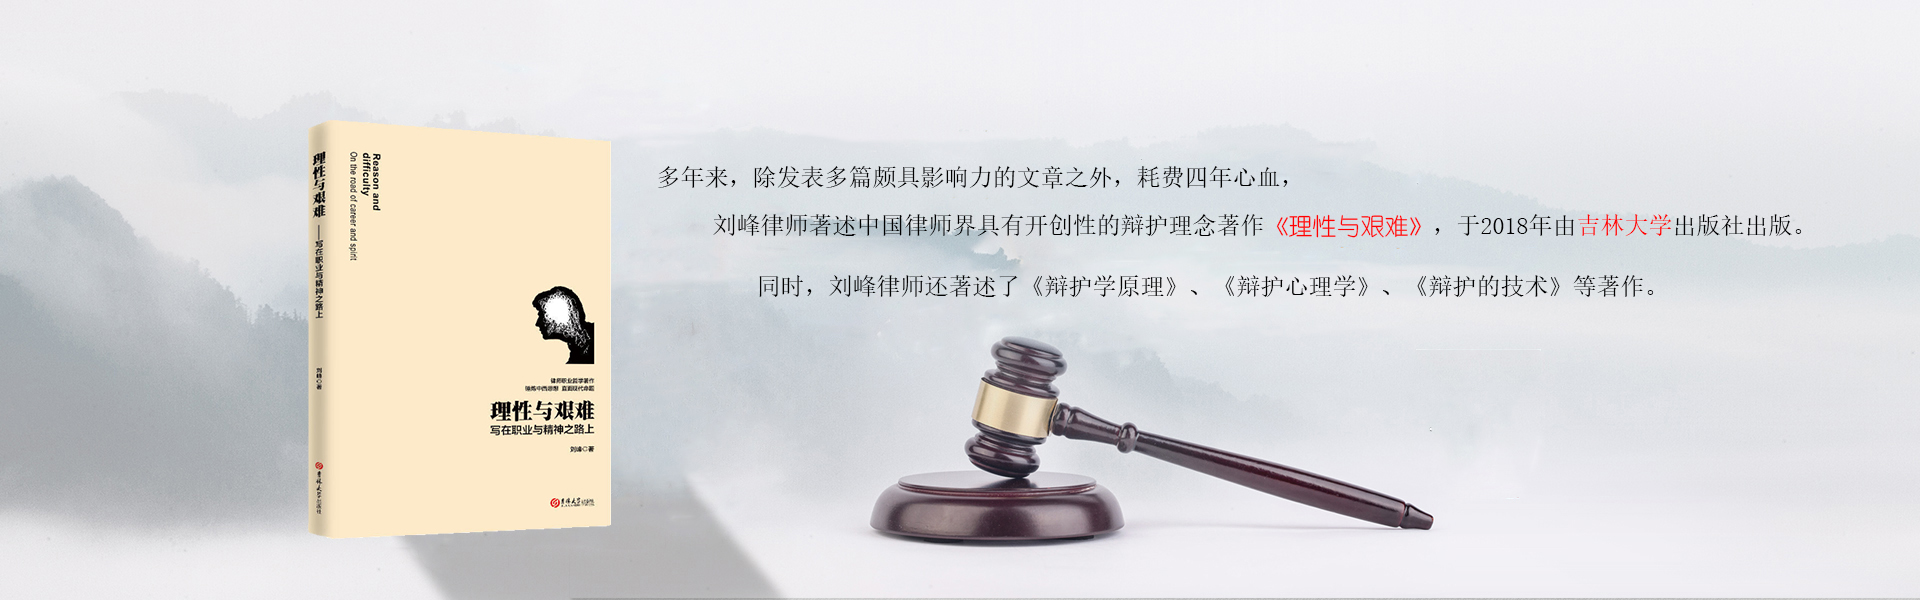 广州取保候审律师